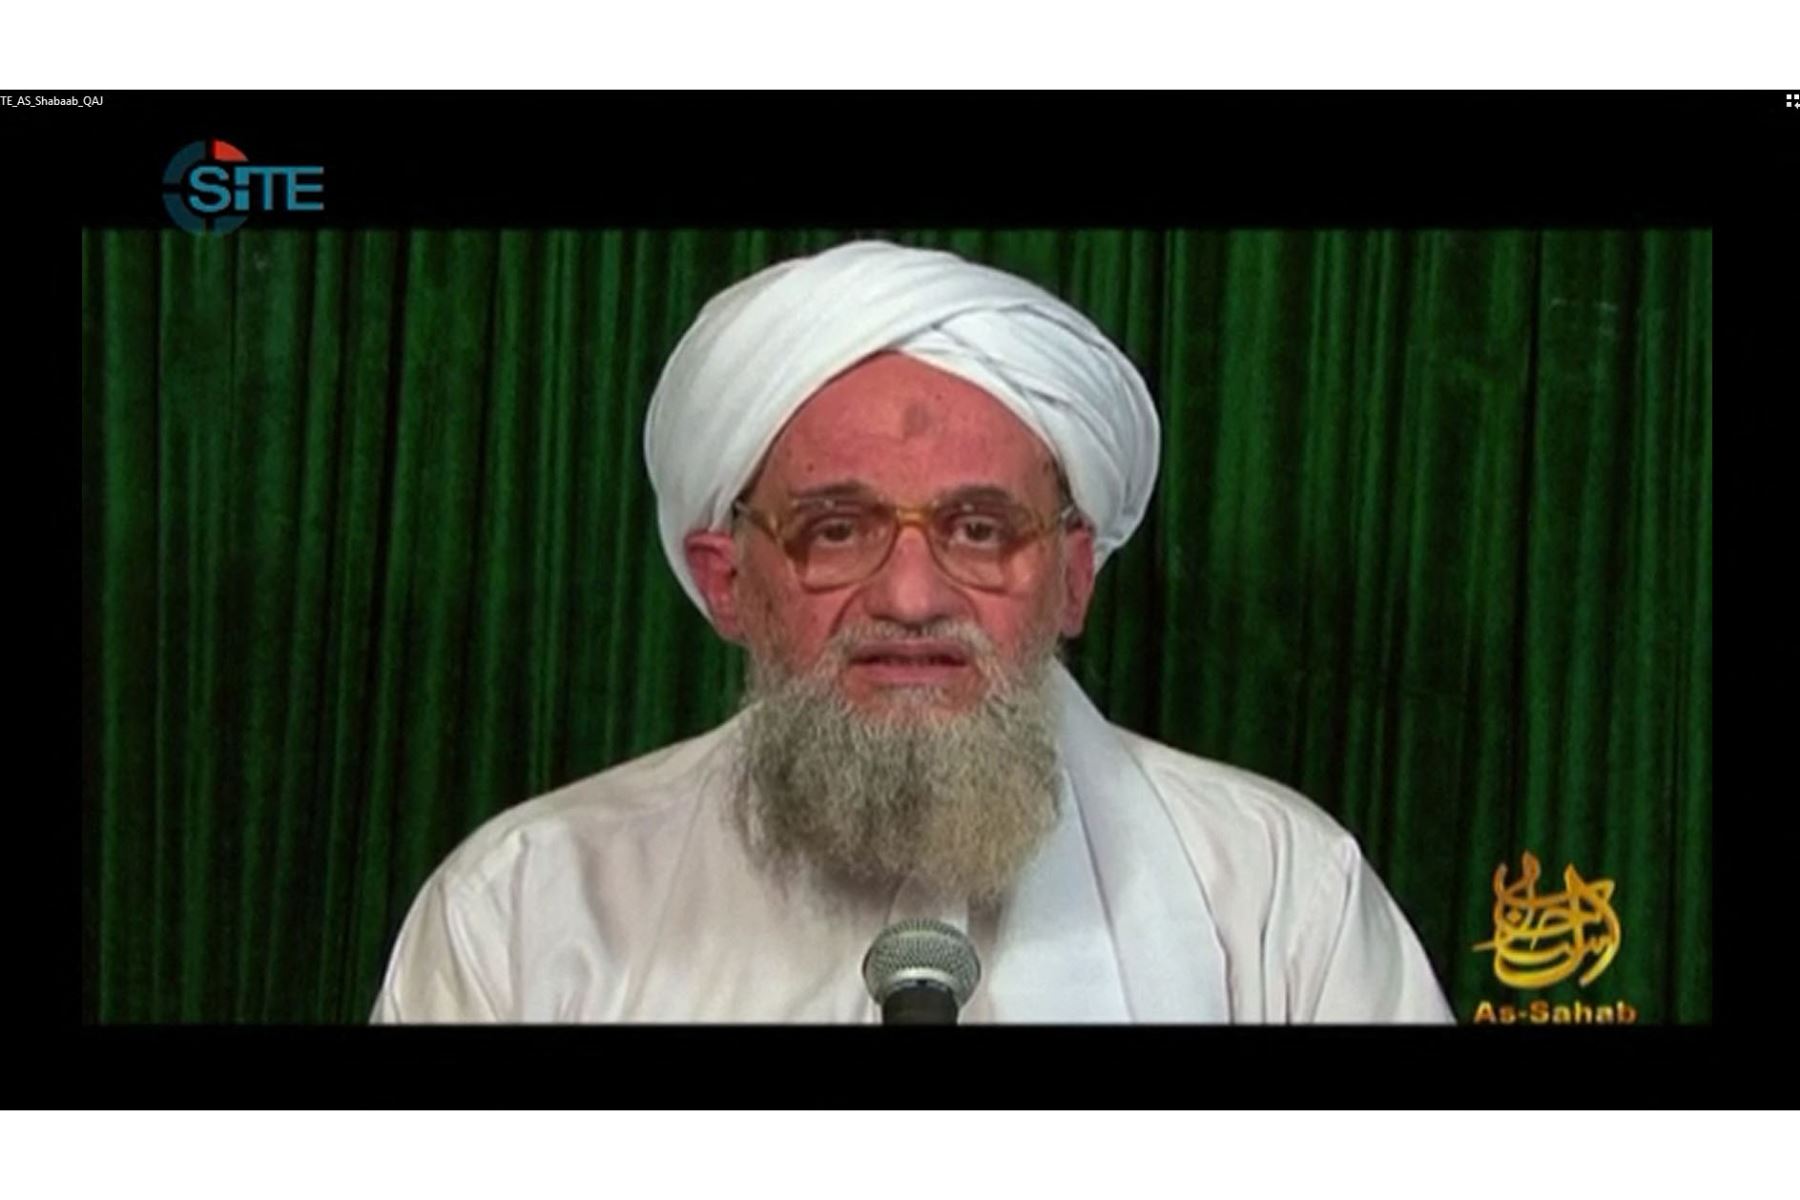 Según los medios estadounidenses, Ayman al Zawahiri podría haber muerto en un ataque con drones llevado a cabo por la Agencia Central de Inteligencia (CIA) en la capital afgana, Kabul. Foto: AFP